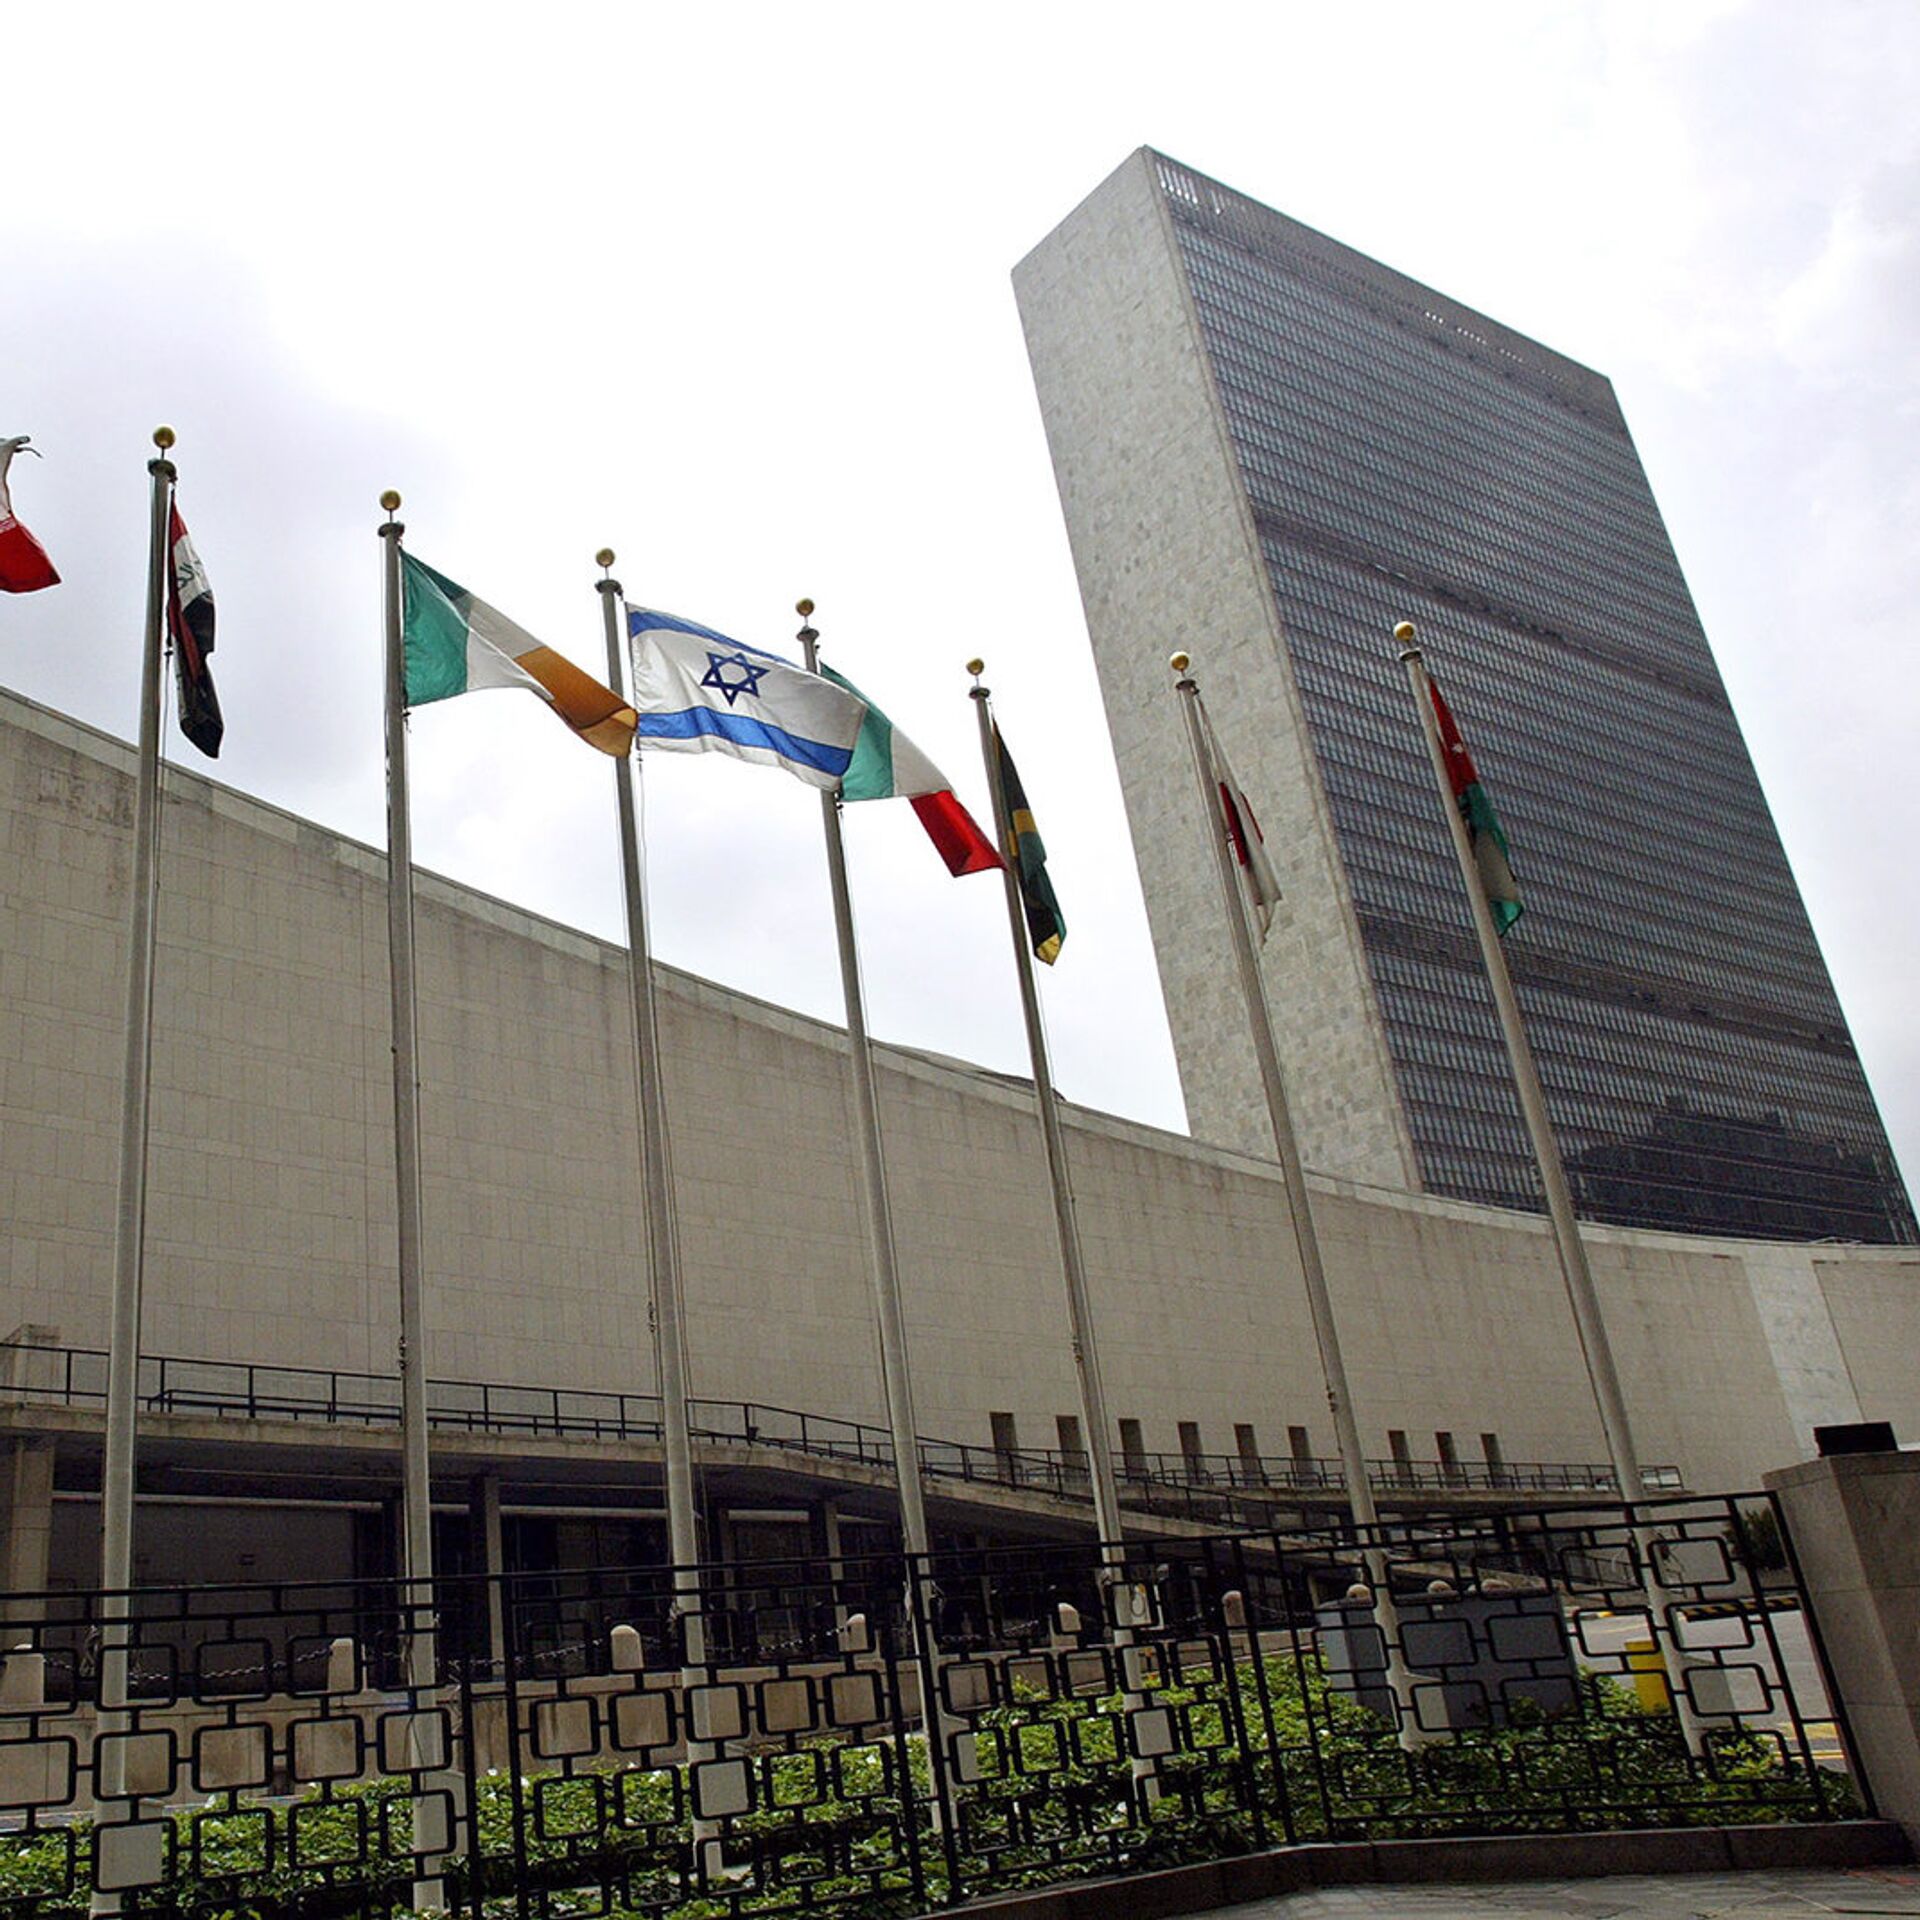 Город штаб квартиры оон. Штаб-квартира ООН В Нью-Йорке. Здание ООН (организации Объединённых наций) в Нью-Йорке. Здание Генеральной Ассамблеи ООН В Нью-Йорке. Генассамблея ООН здание.